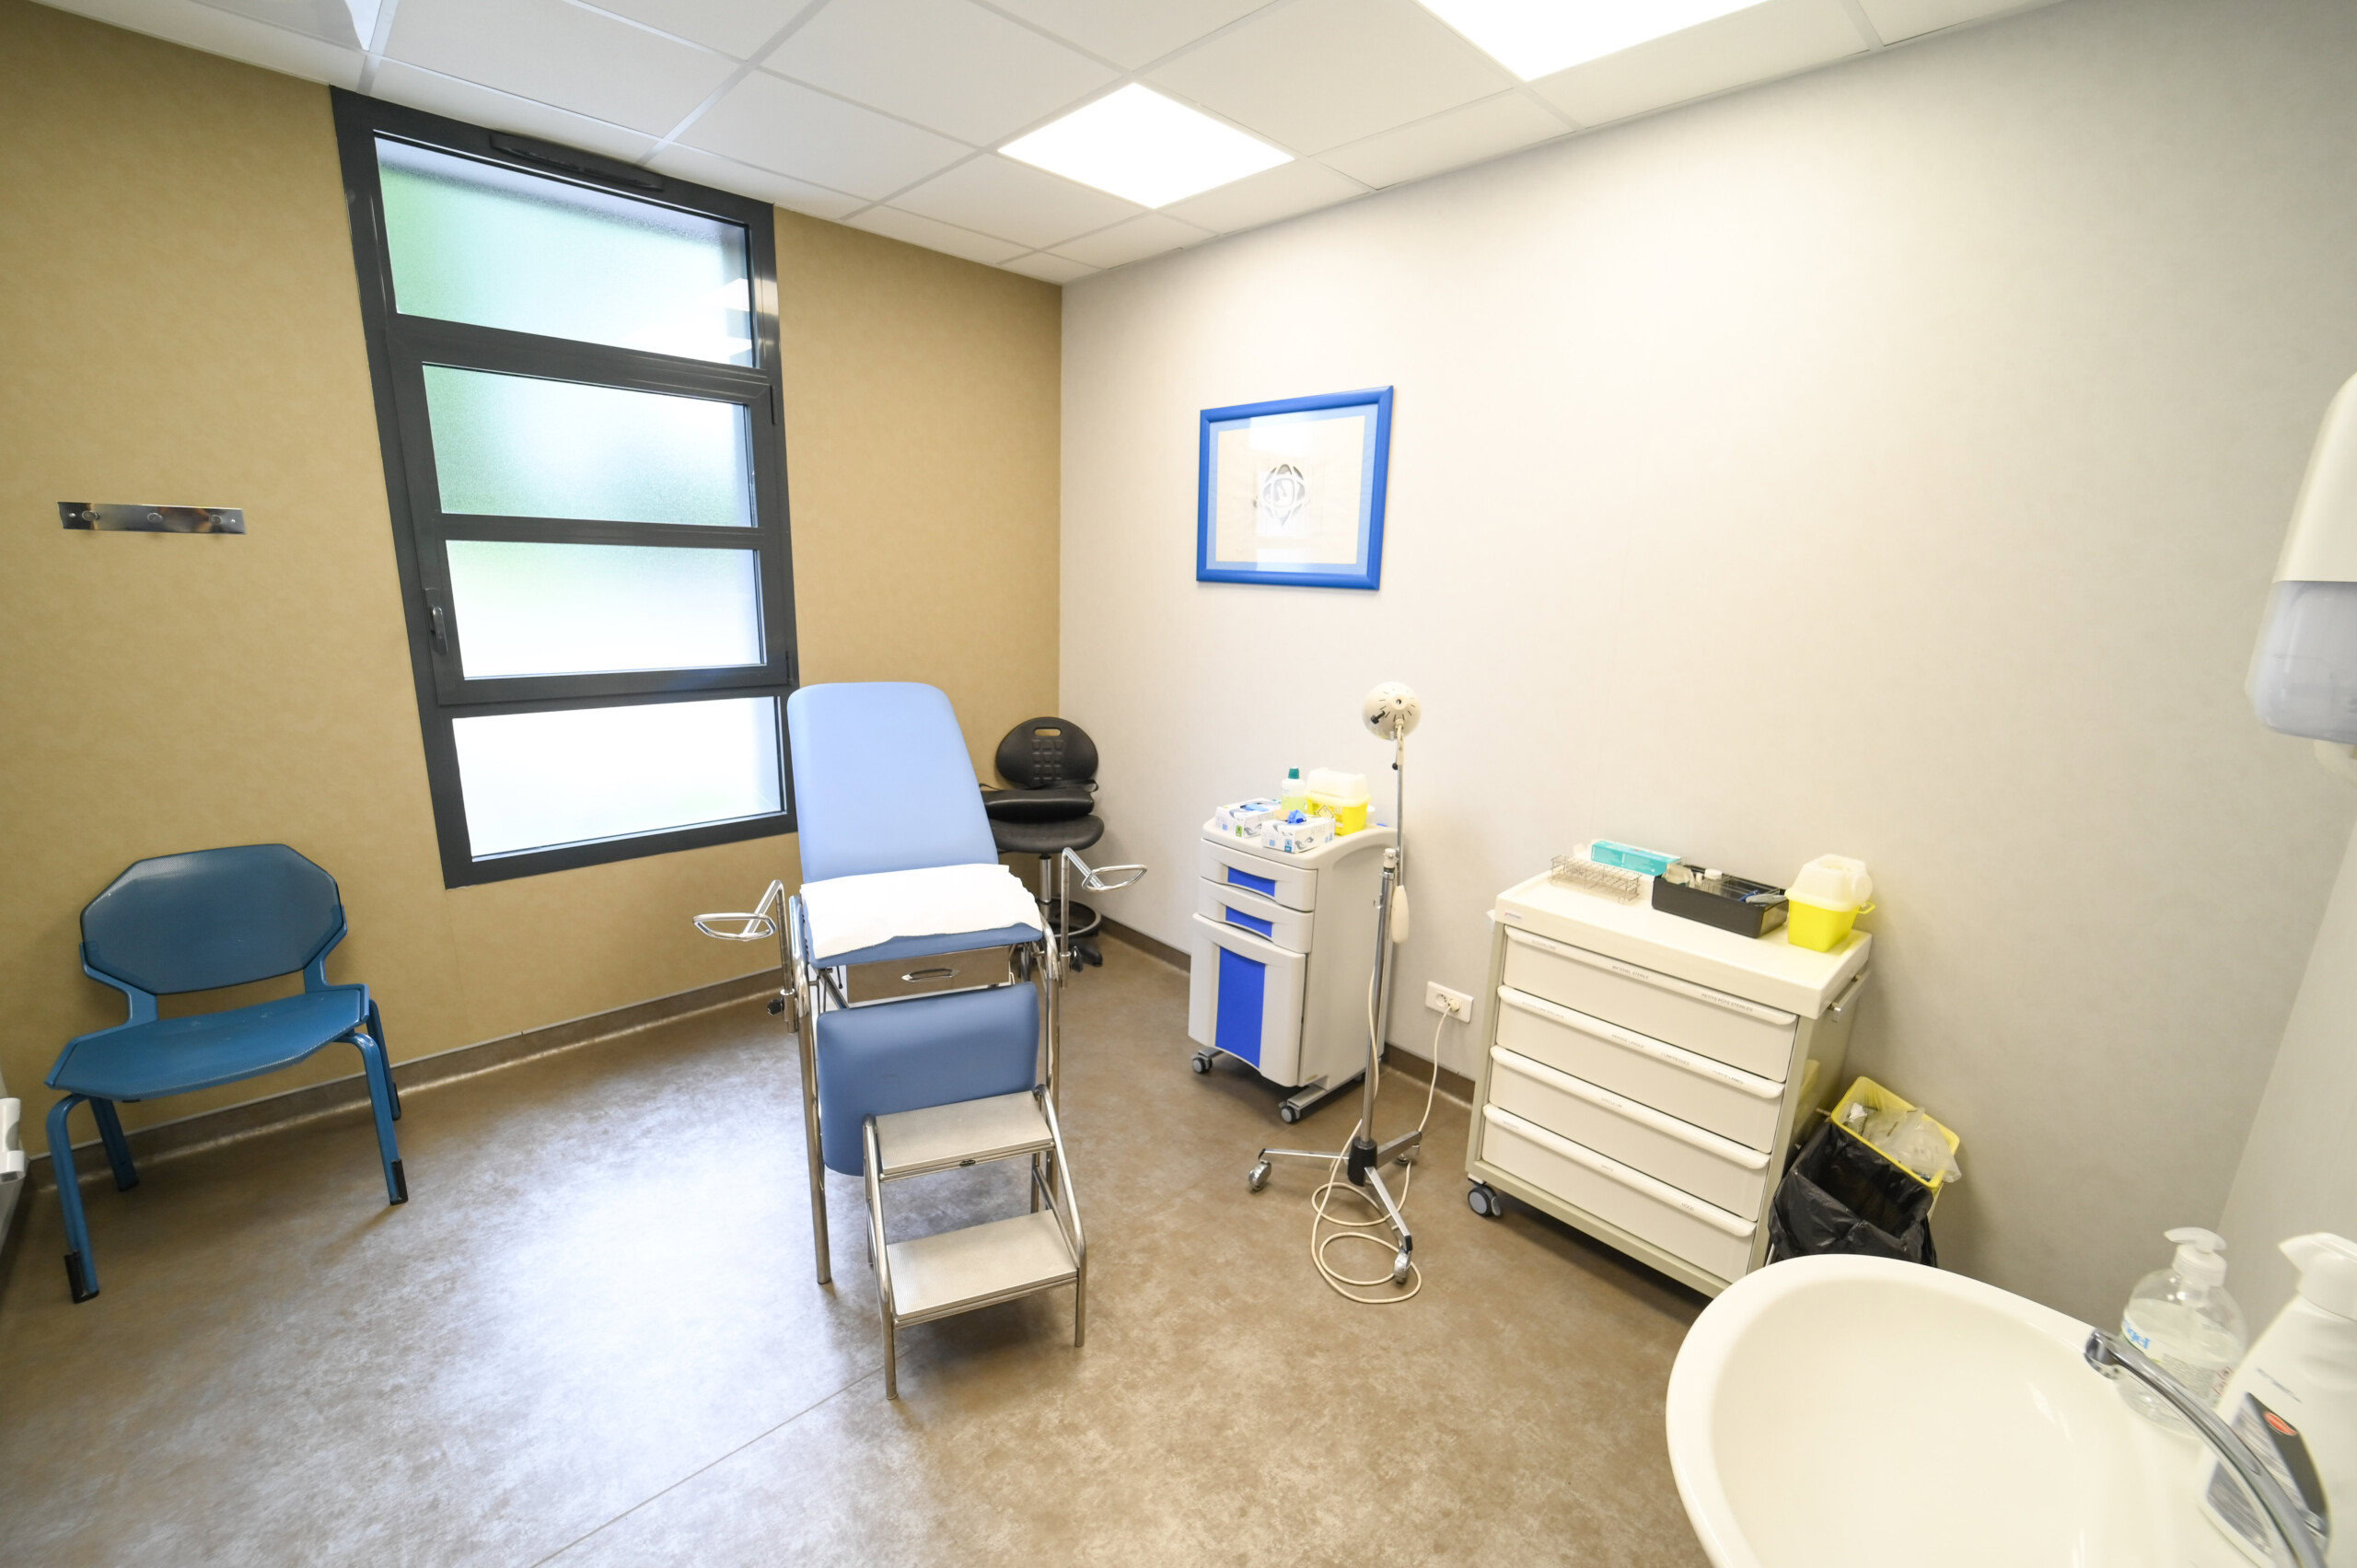 Une salle d'examen médical moderne avec une chaise de patient, des instruments médicaux sur un chariot, un évier et deux chaises bleues à côté d'une grande fenêtre au Laboratoire Balan Bio Ard'Aisne.